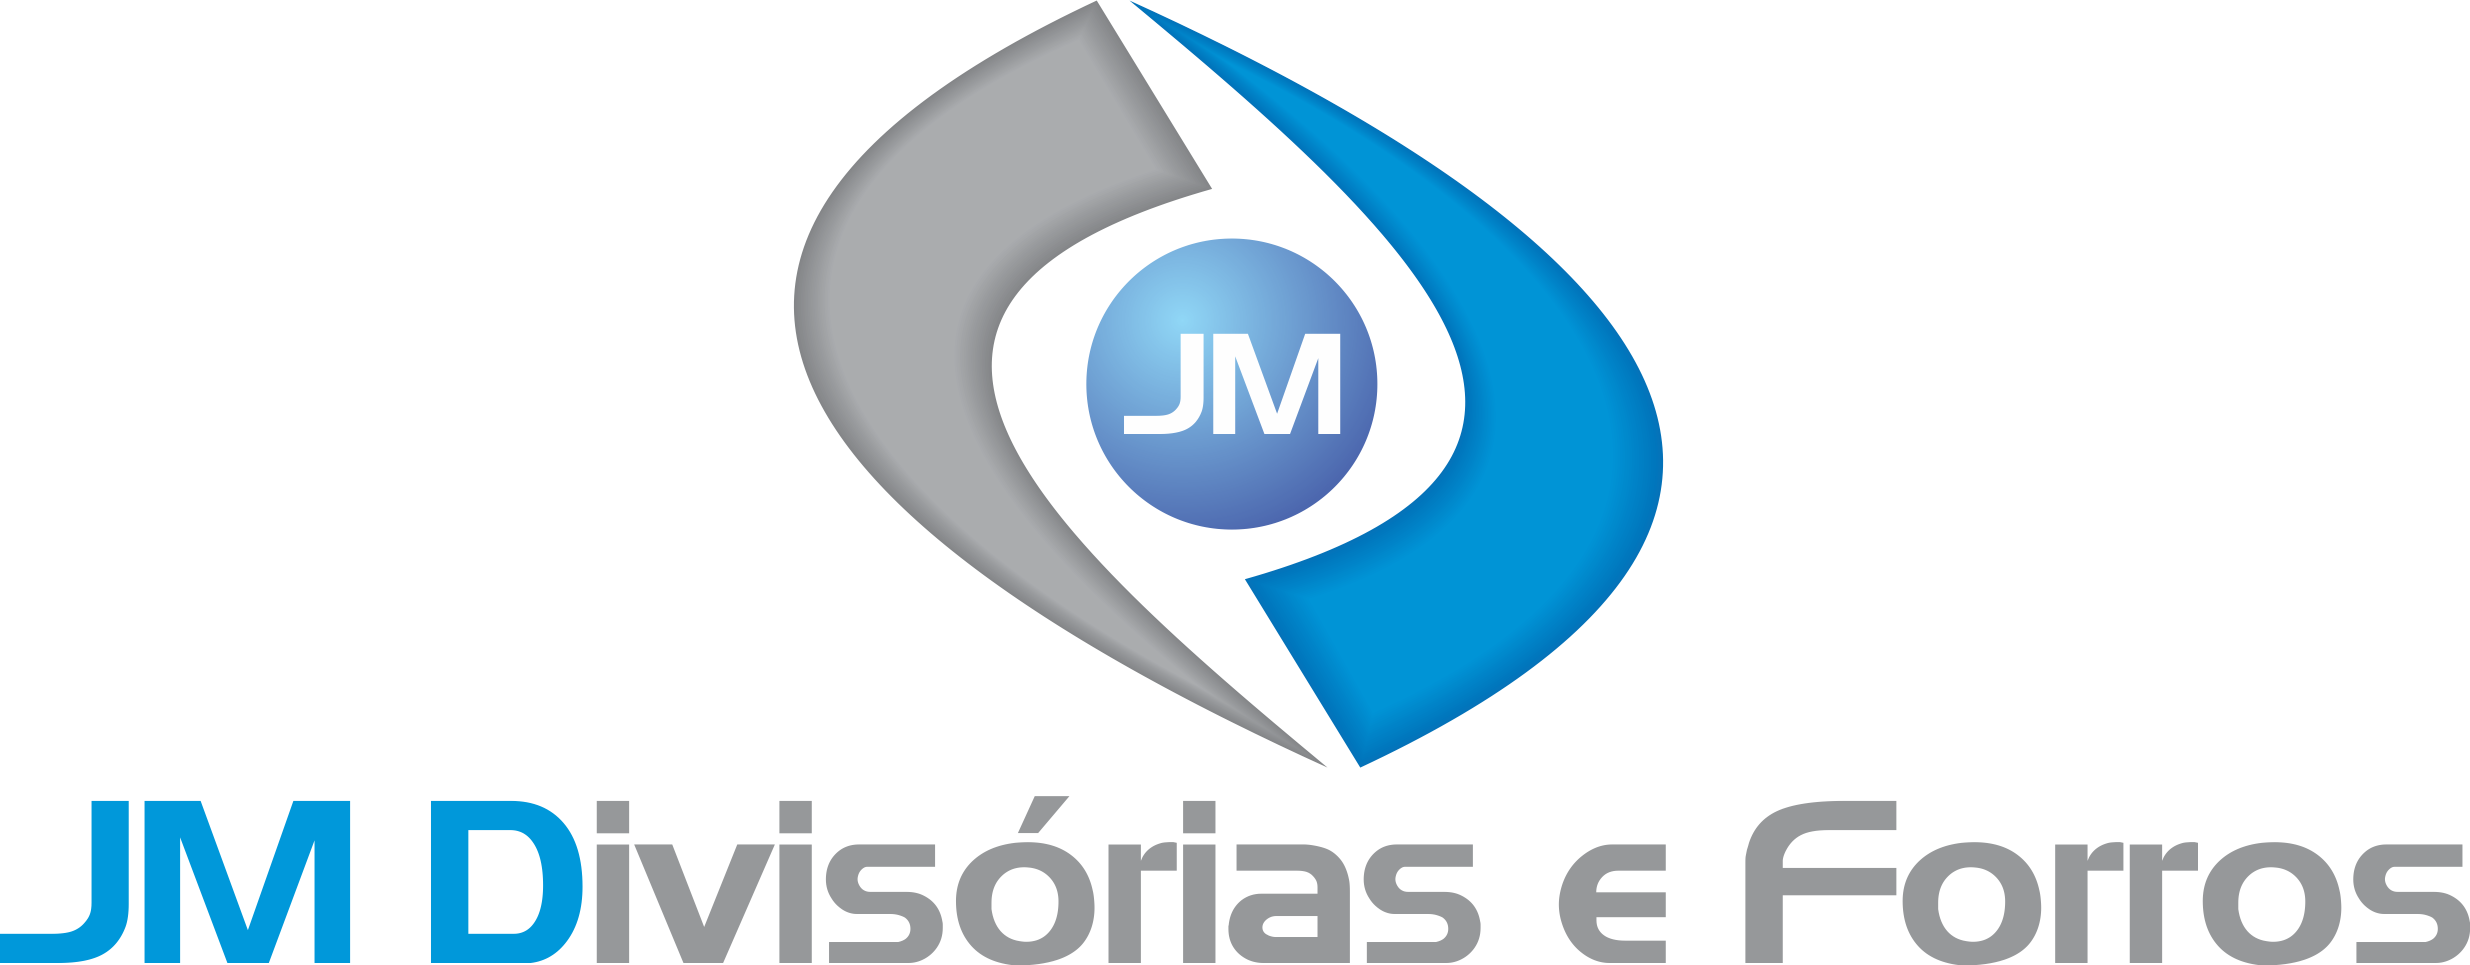 JM Divisórias